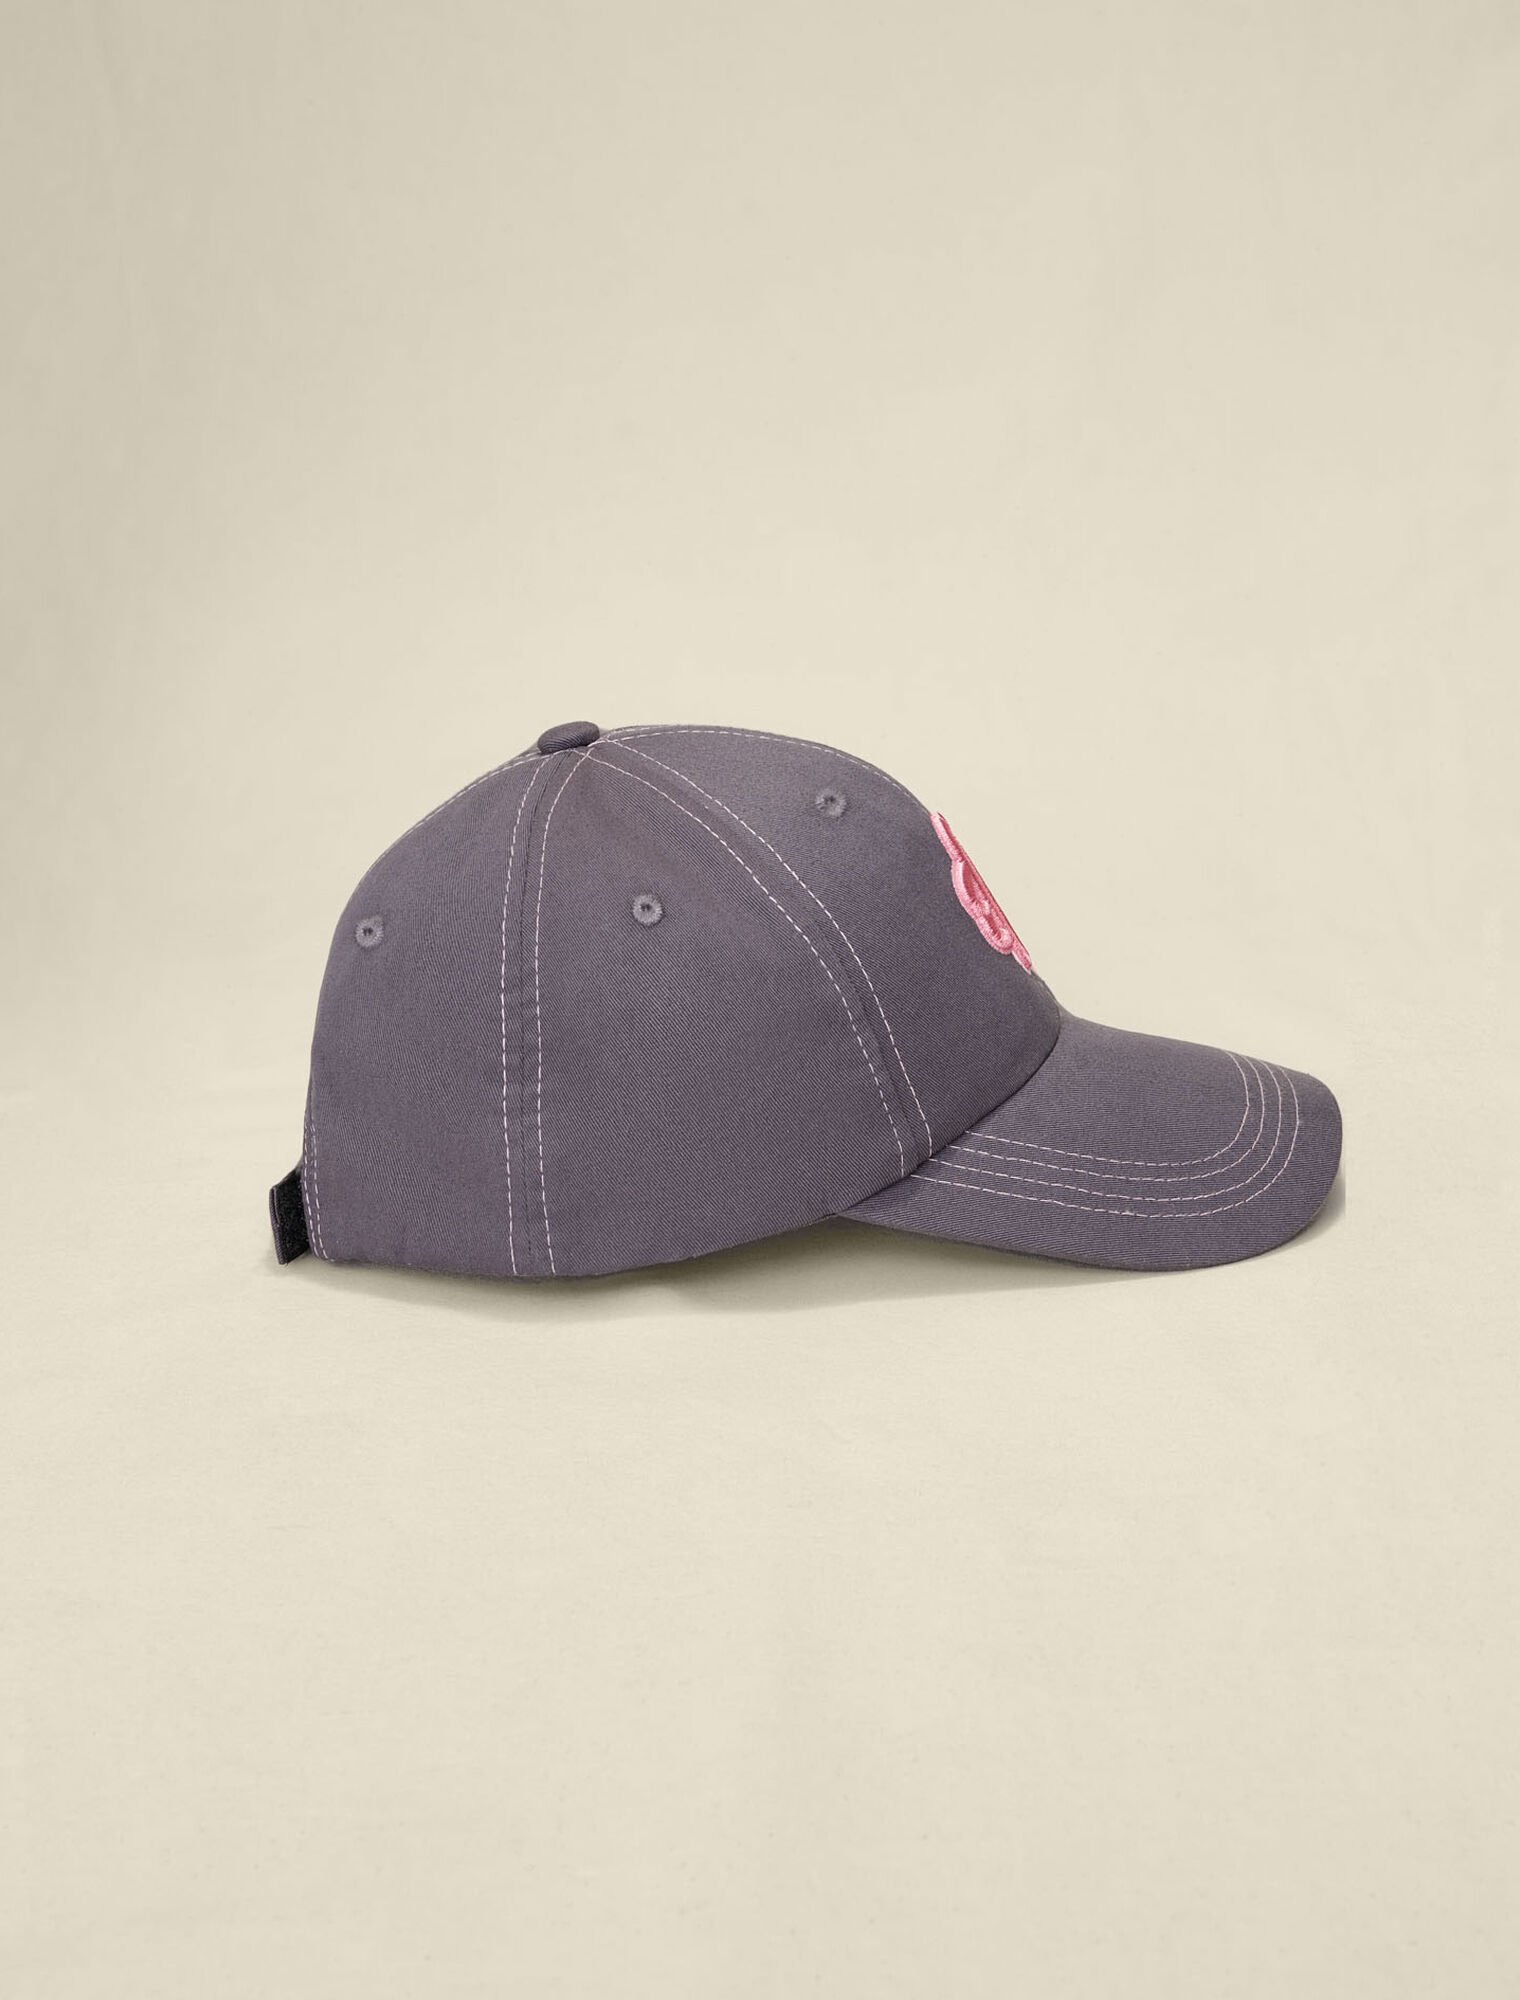 Cotton cap with Clover logo